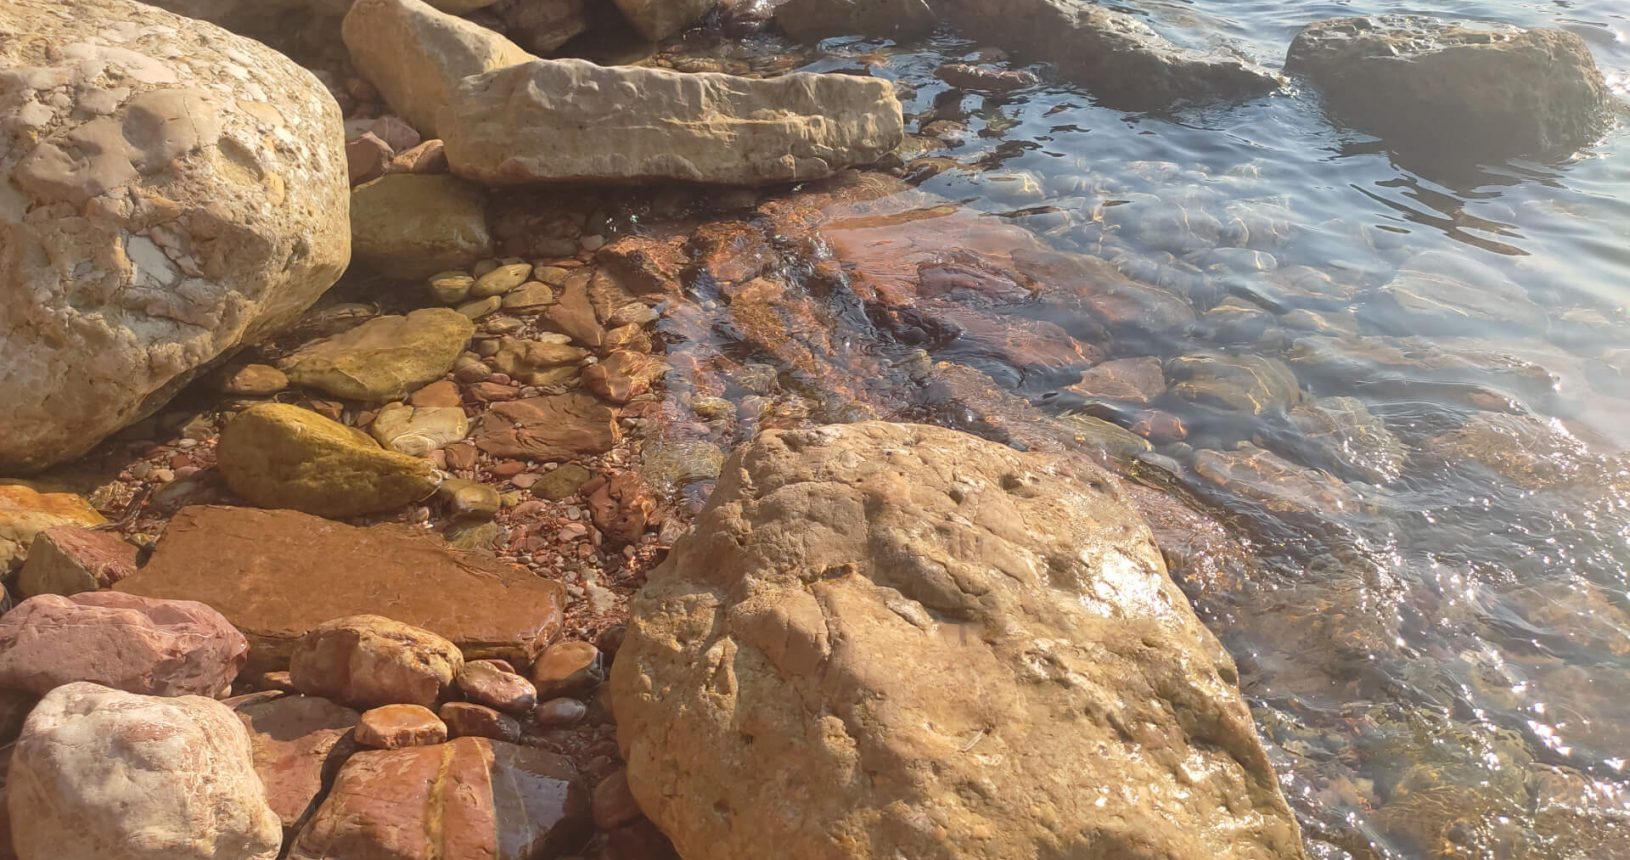 Crvena Stijena transparent water and huge rocks